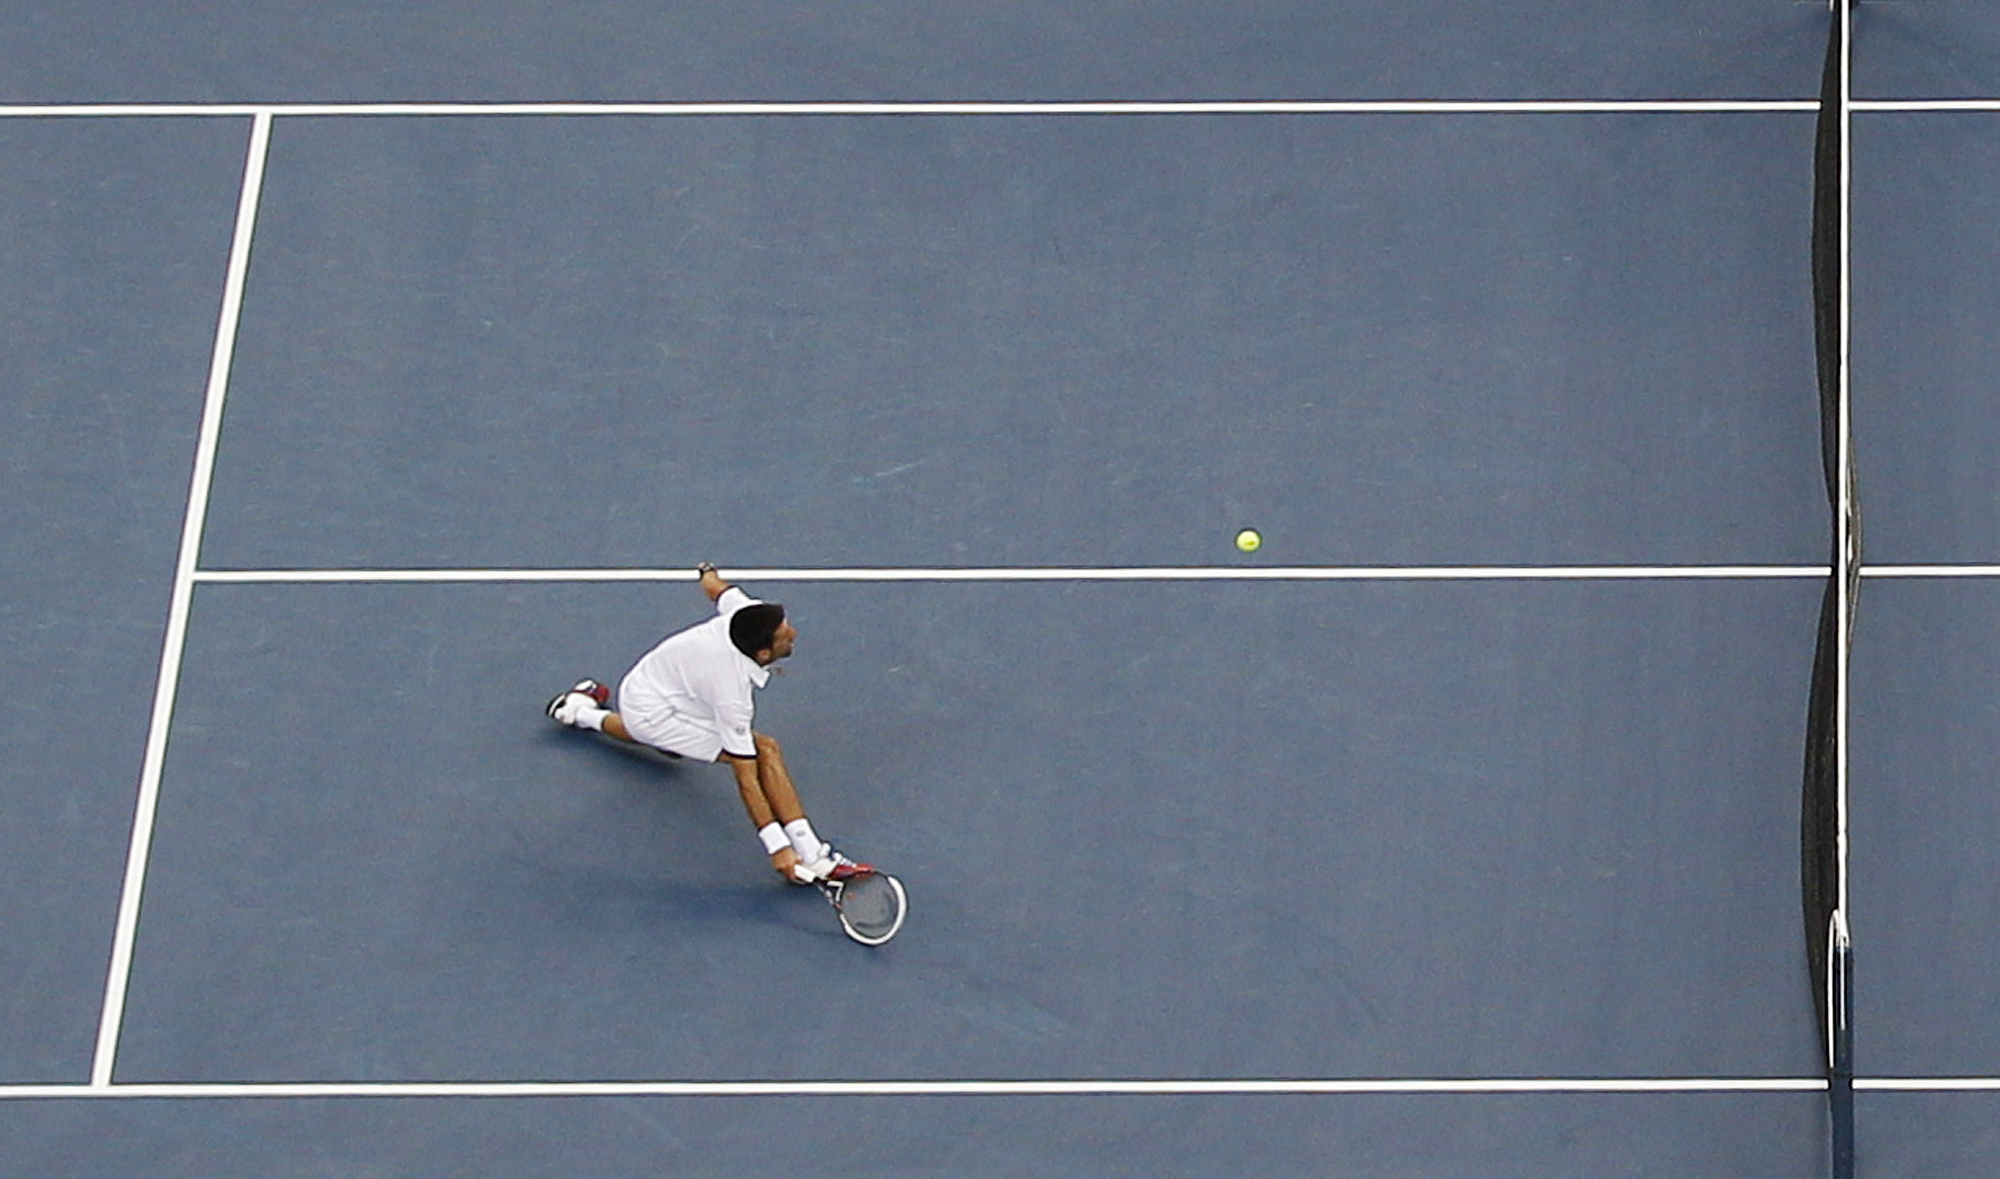 US Open, Novak Djokovic, Roger Federer, Rafael Nadal, Tennis